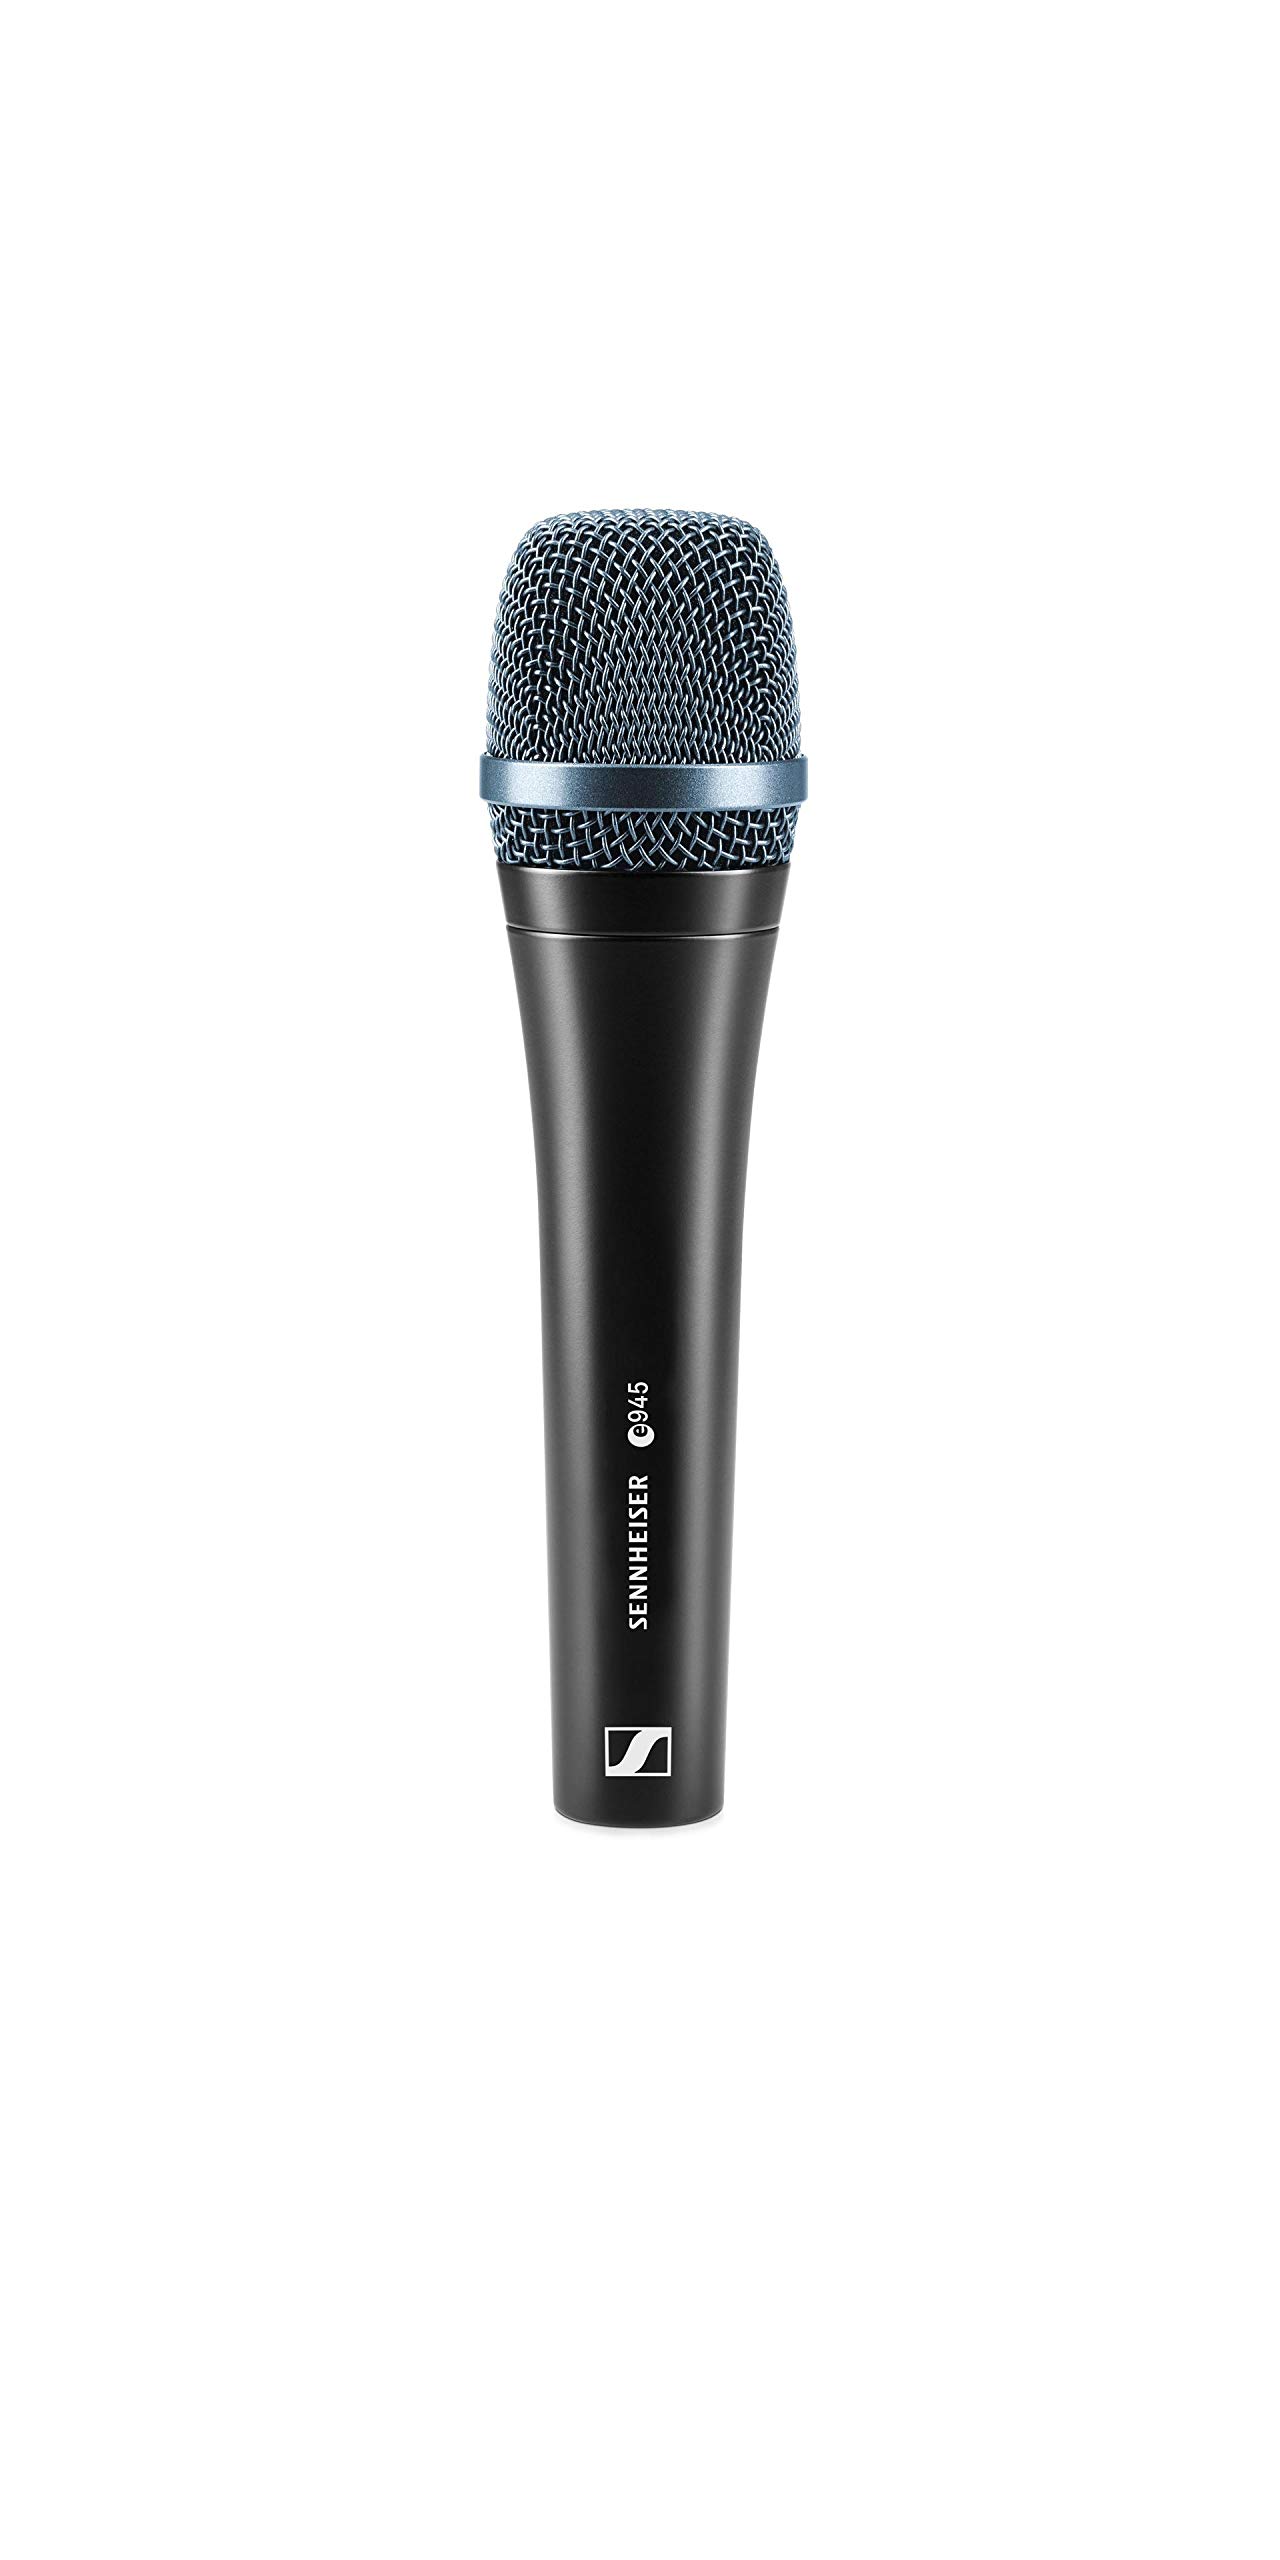 Sennheiser Pro Audio Micrófono Vocal Supercardioide Dinámico Profesional E 945